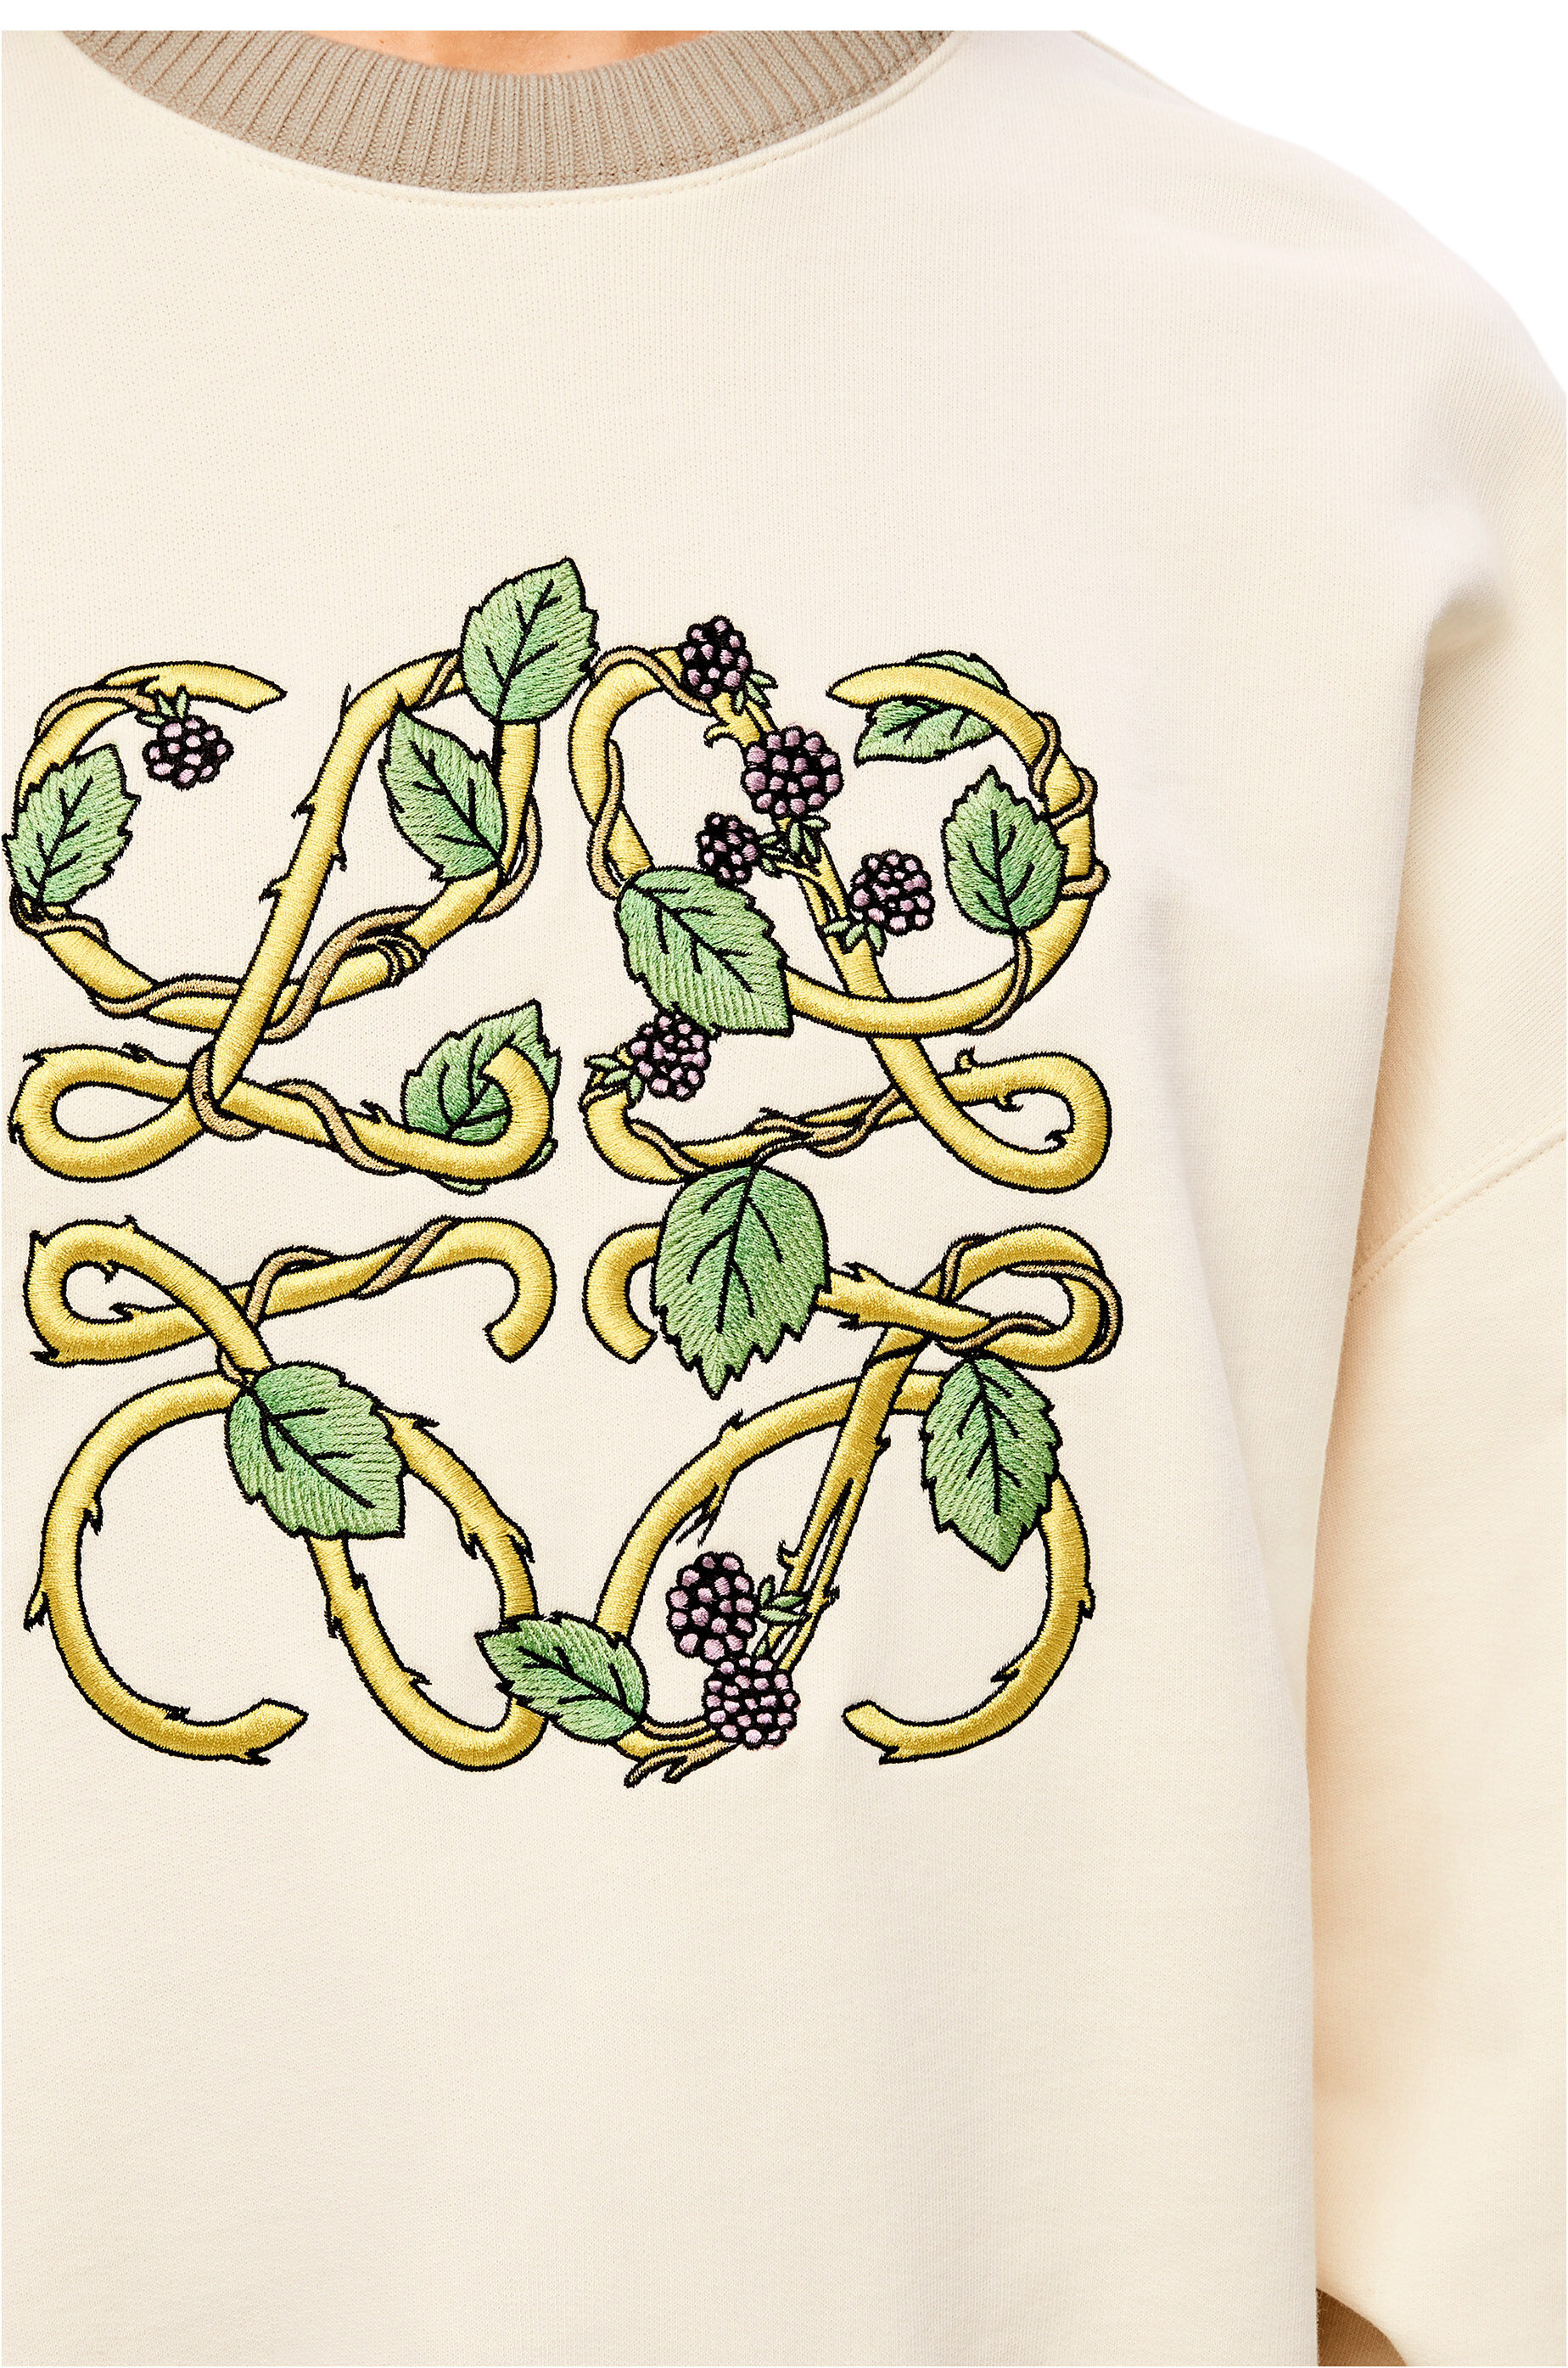 Herbarium Anagram sweatshirt in cotton